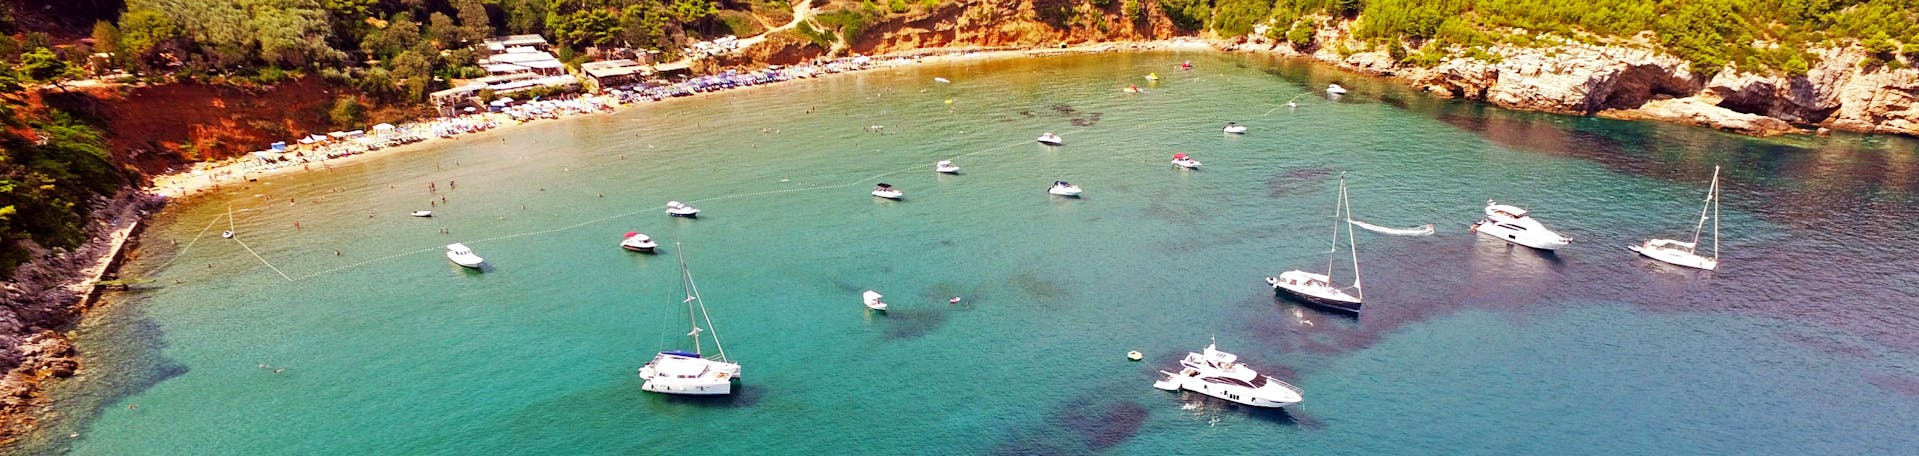 Gita privata in barca di mezza giornata da Dubrovnik alle Isole Elafiti.